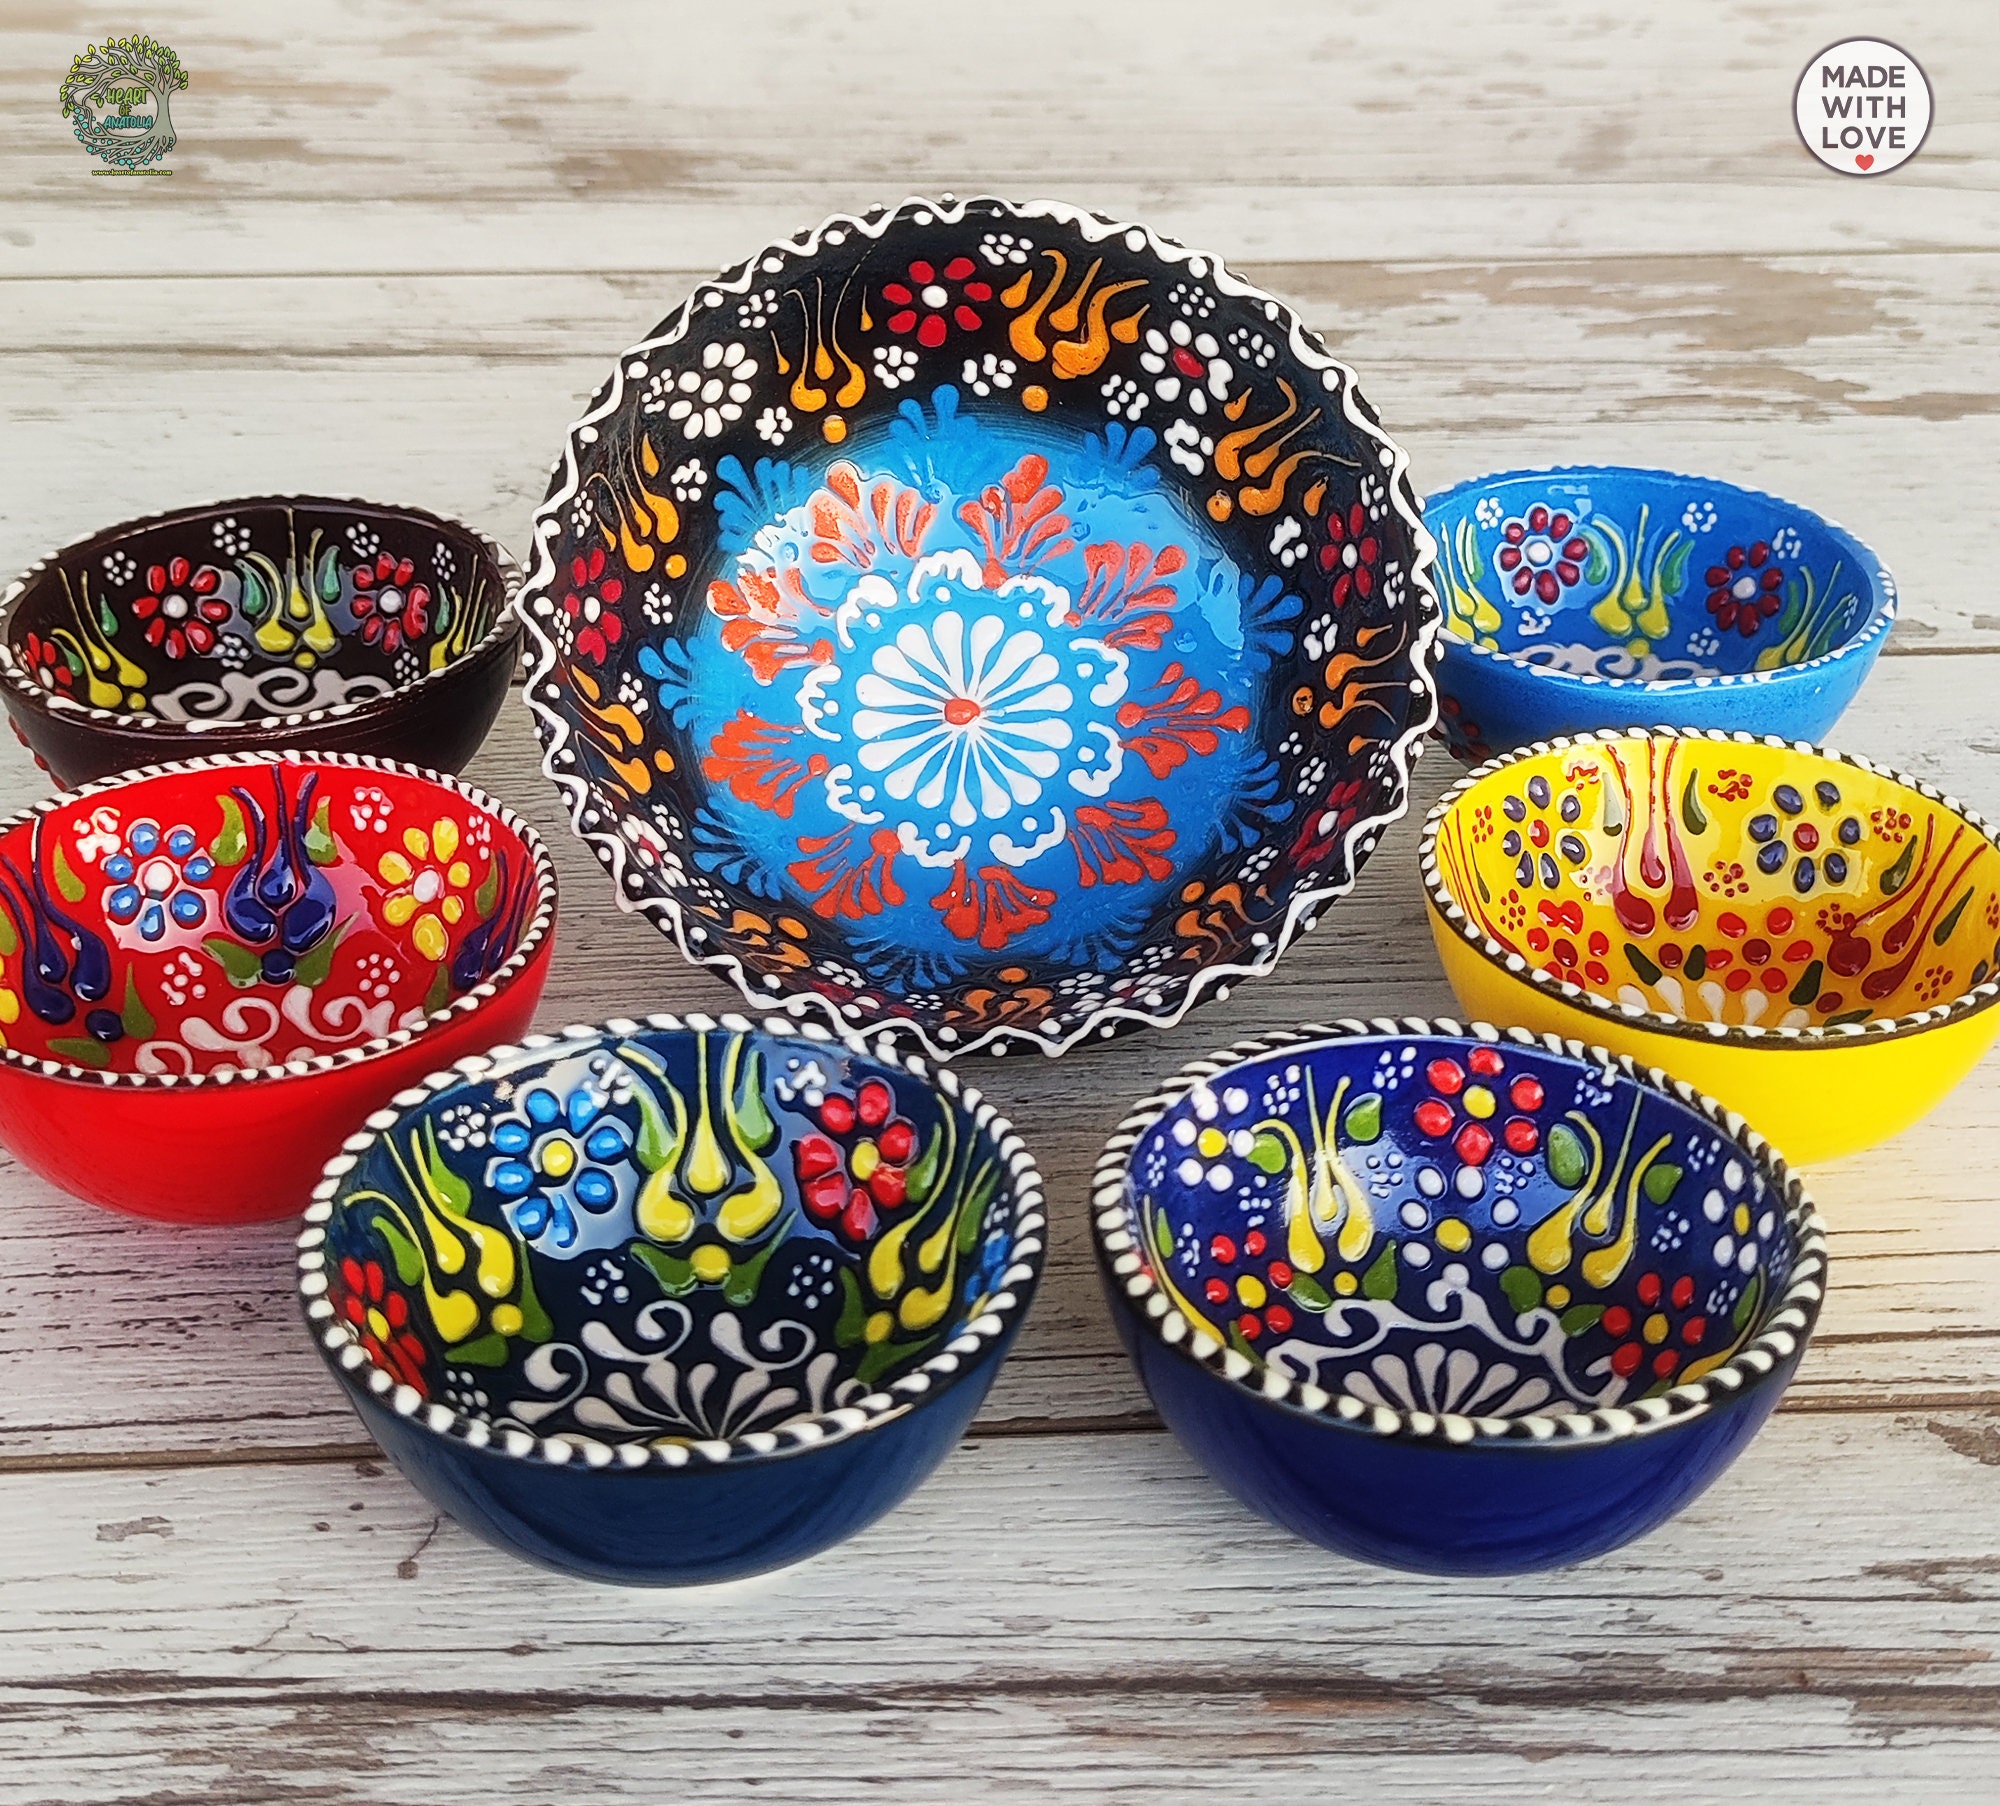 Juego de 7 cuencos de cerámica hechos a mano, aperitivos, salsas, aperitivos,  tapas, vajilla Mezze, cuencos para servir, plato de cerámica turco marroquí  único, regalo -  México